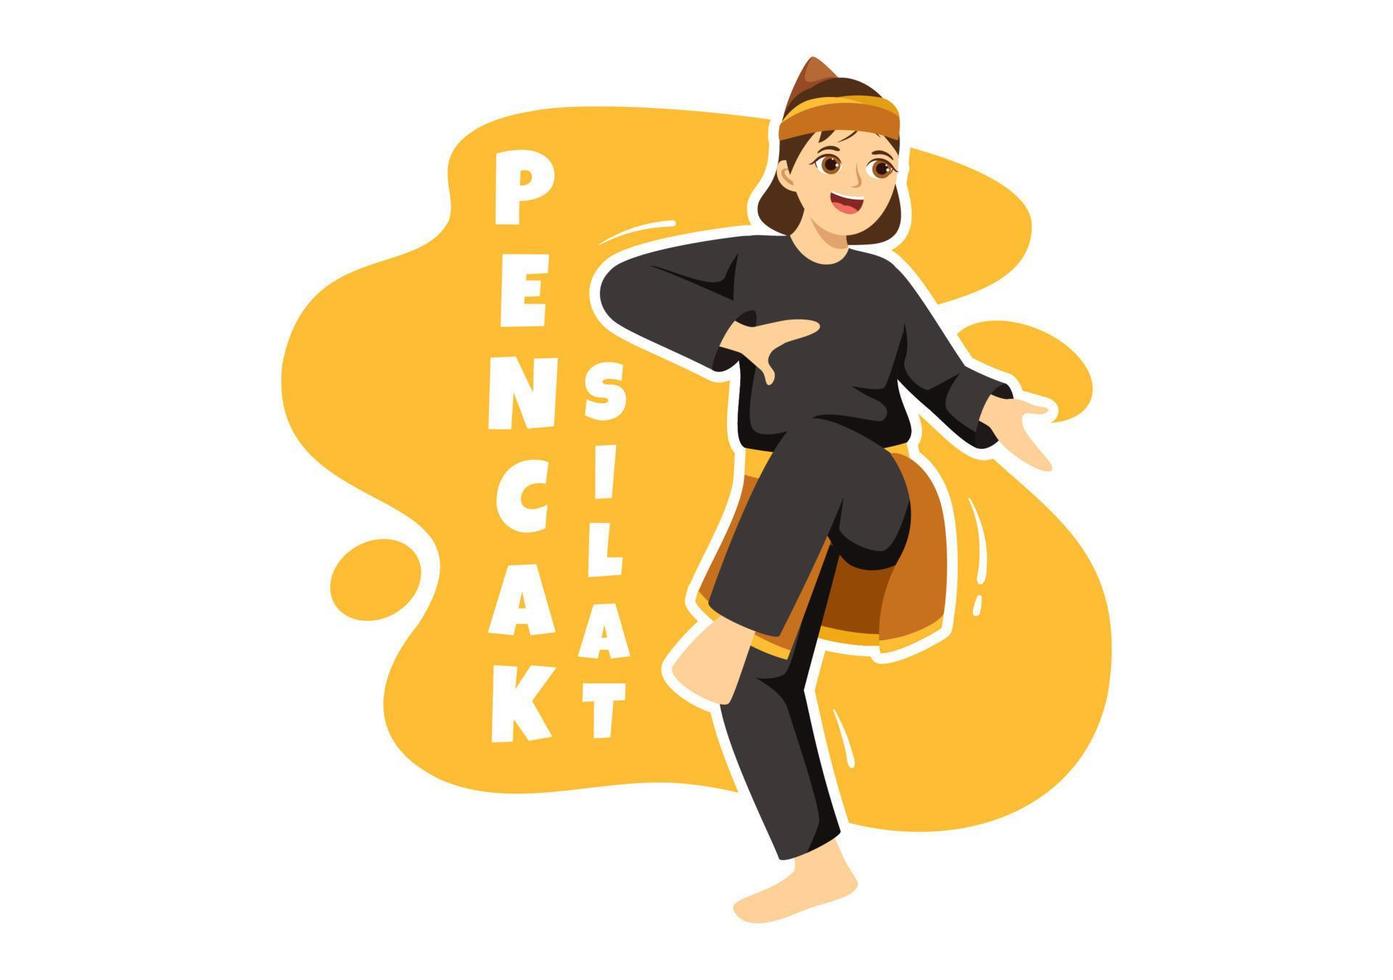 ilustración de pencak silat sport con personas que posan como artista marcial de indonesia para banner web o página de destino en plantillas planas dibujadas a mano de dibujos animados vector